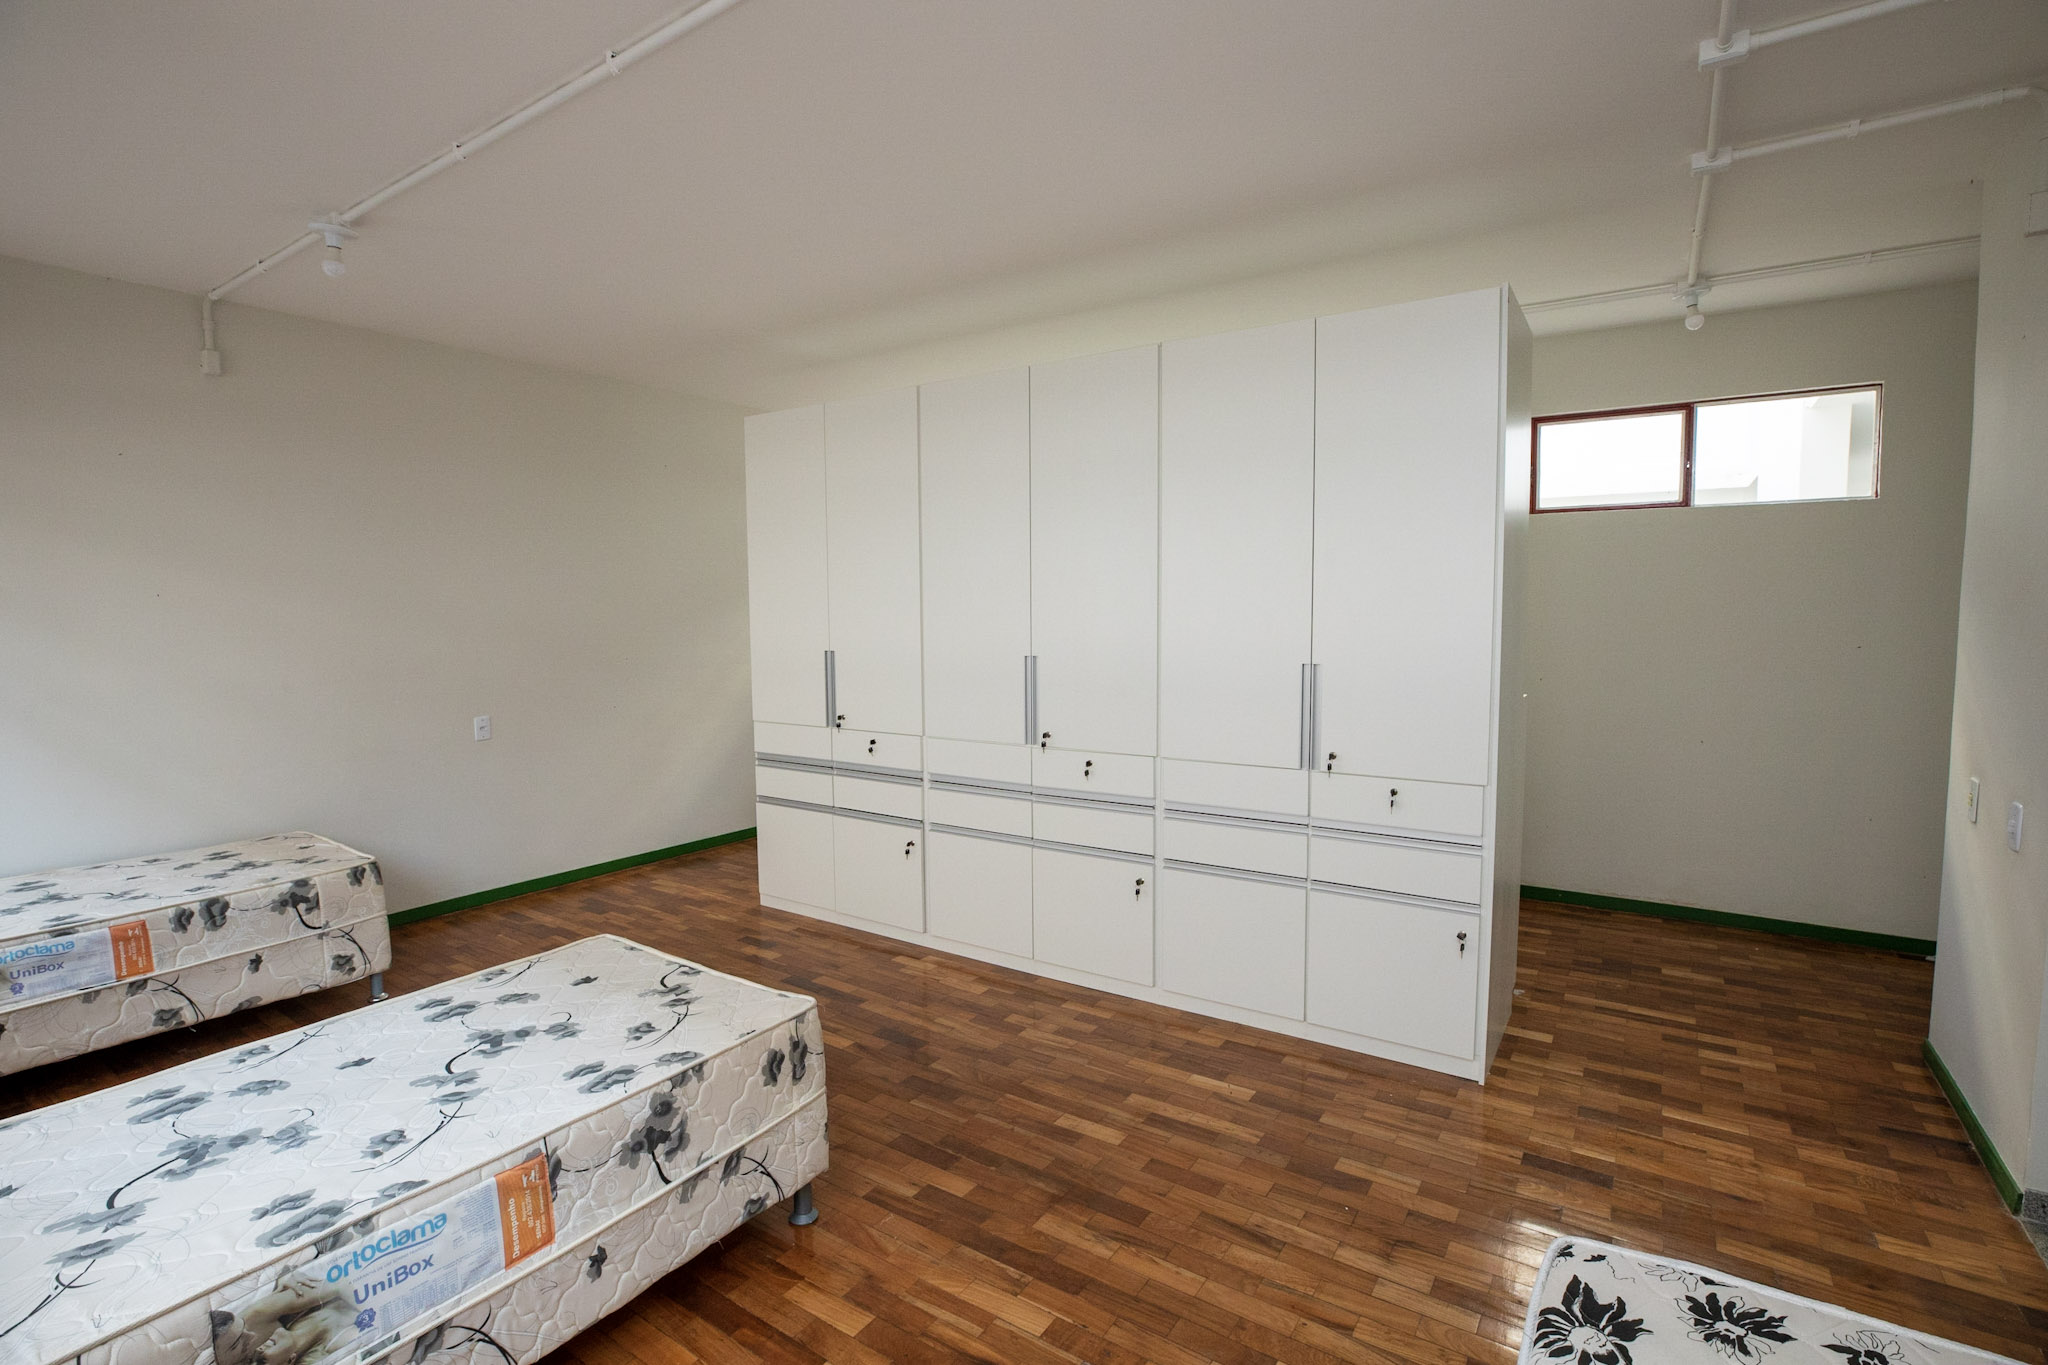 Interior de um quarto de alojamento, com piso de madeira, 3 camas box e um armário branco com portas e gavetas. 